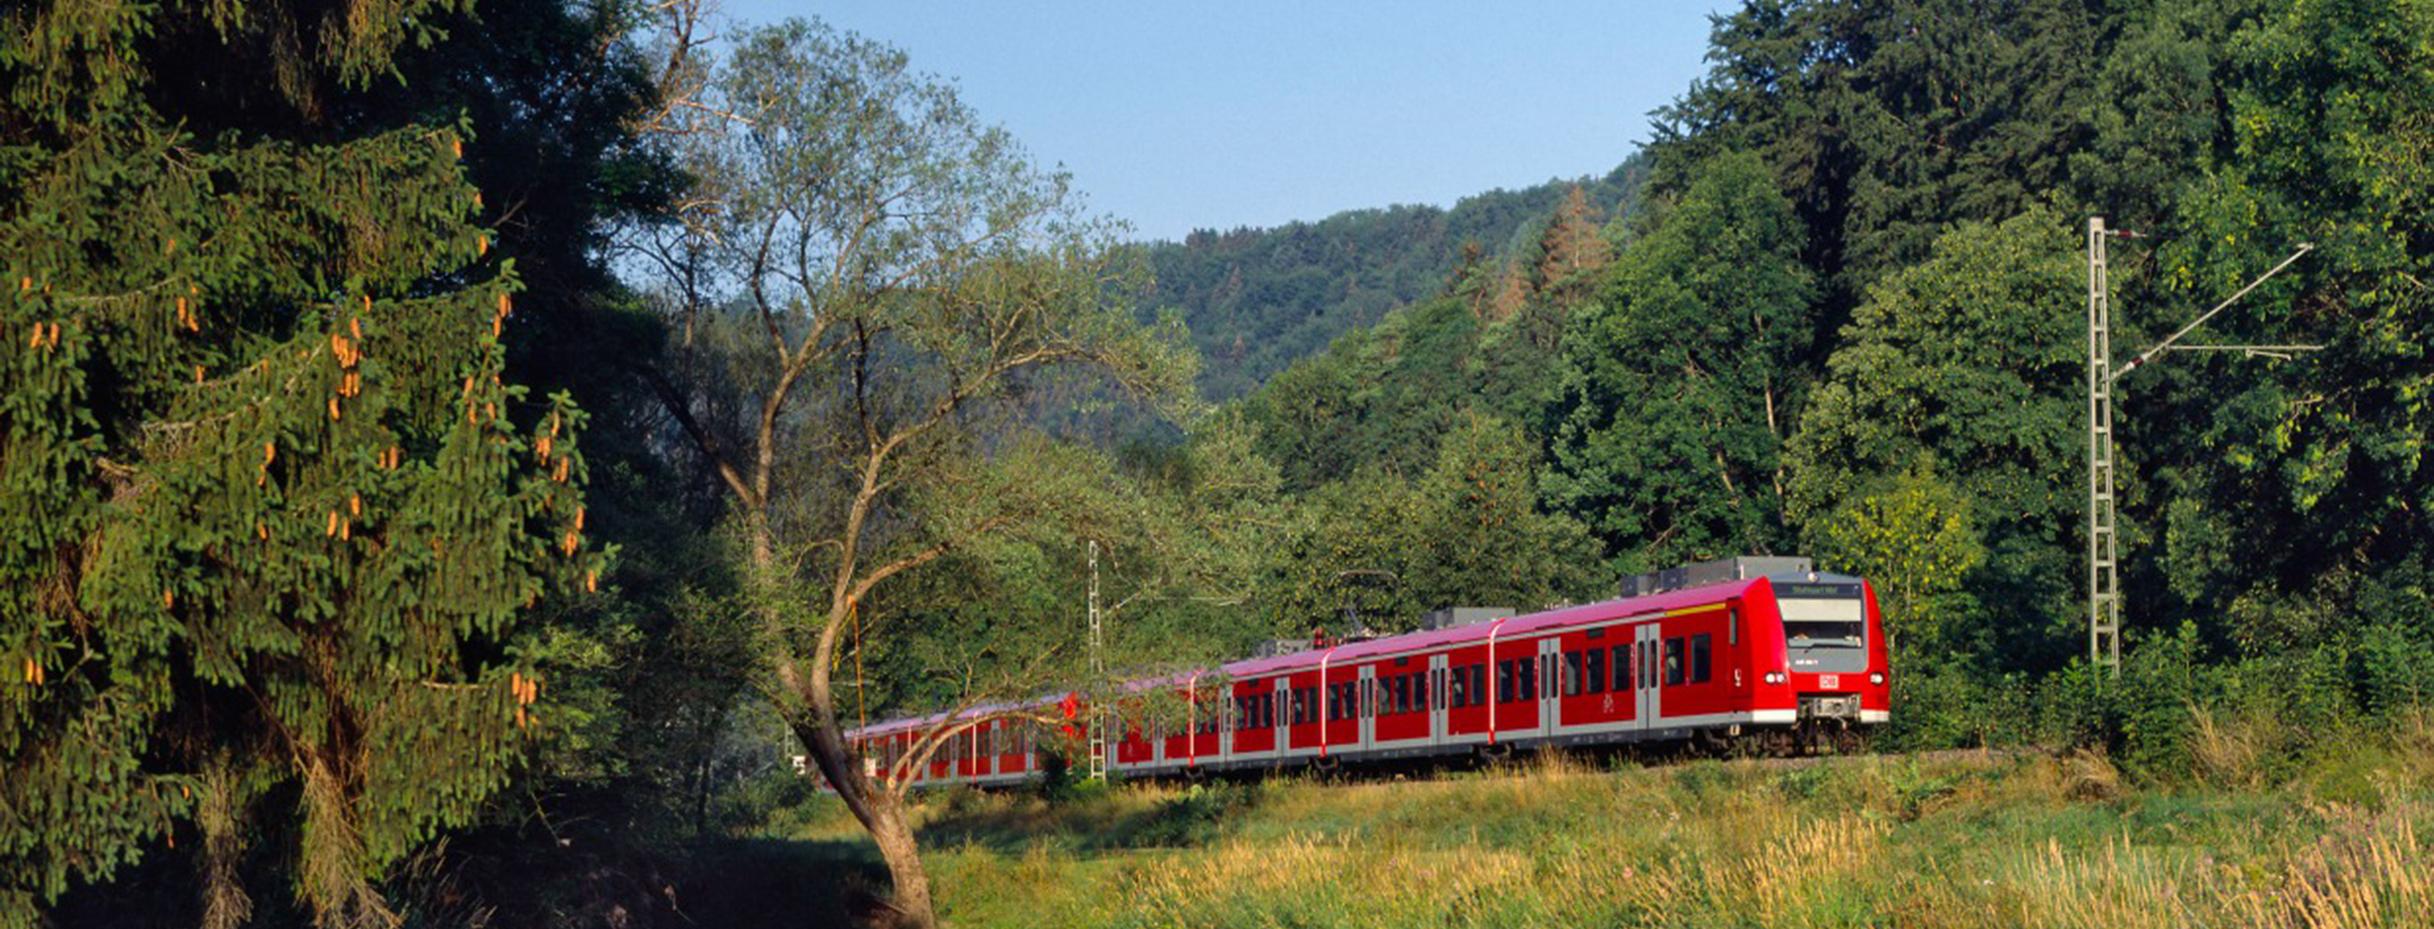 RE zwischen Singen und Stuttgart (Gäubahn) - hier zwischen Aistaig und Sulz, im Vordergrund der Neckar (Bild: Deutsche Bahn AG/ Georg Wagner)